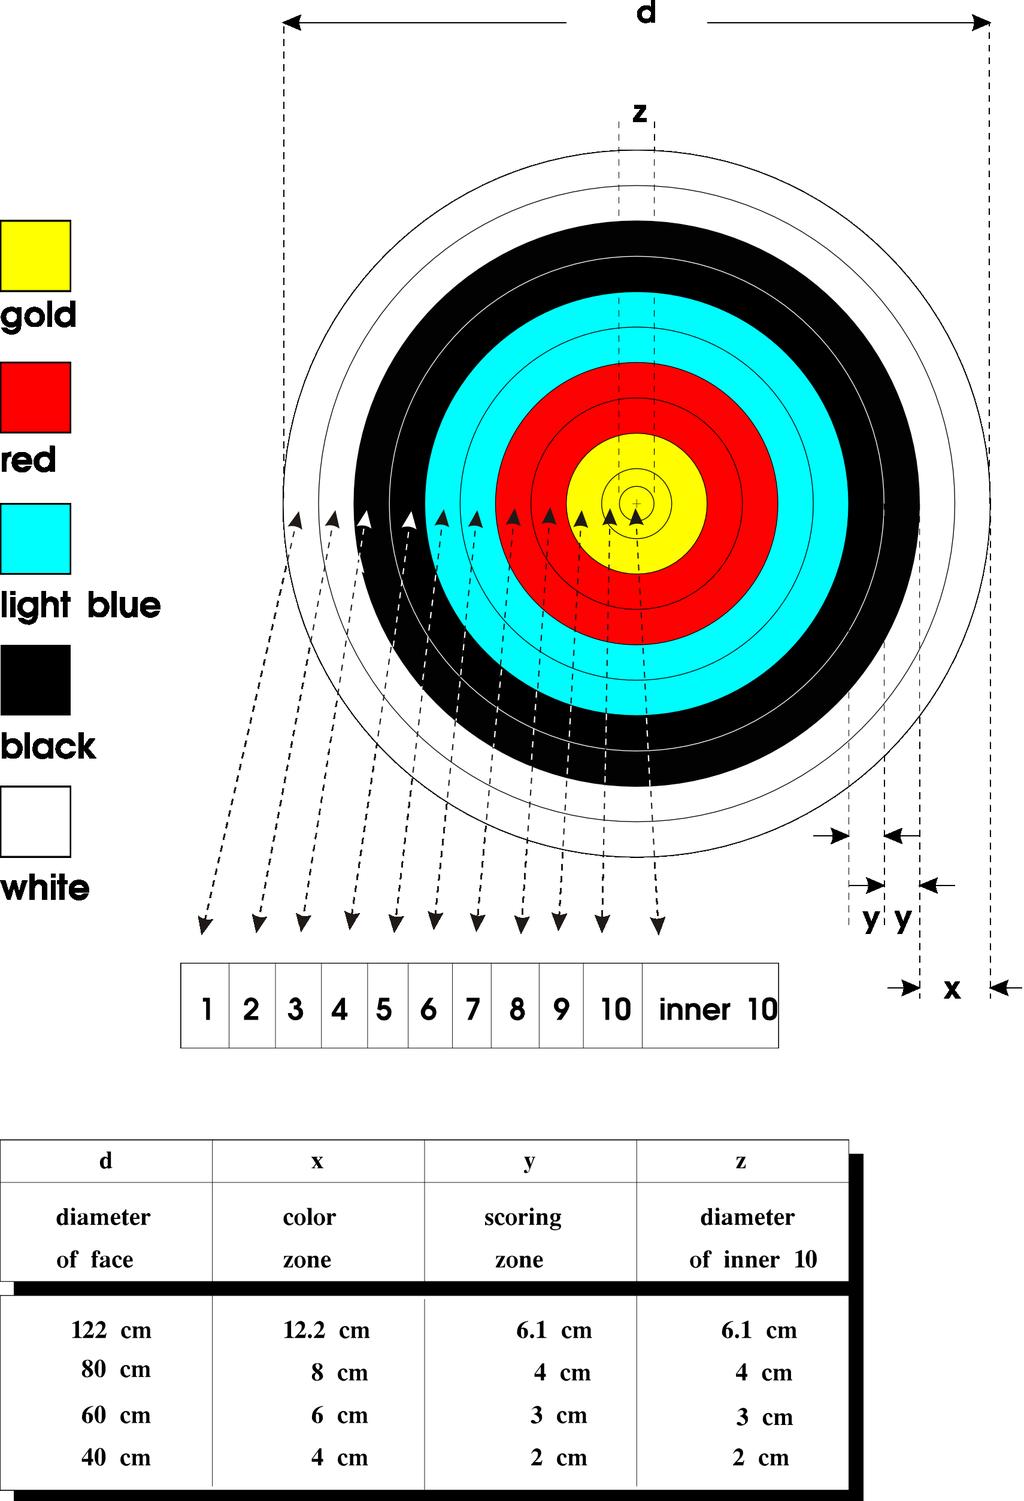 Image 3: 1-10 Scoring Zones Target Face 7.2.2.4. Academische Ronde Hit-Miss blazoen. 7.2.2.4.1. Het blazoen voor de Academische Ronde bestaat uit 2 zones.